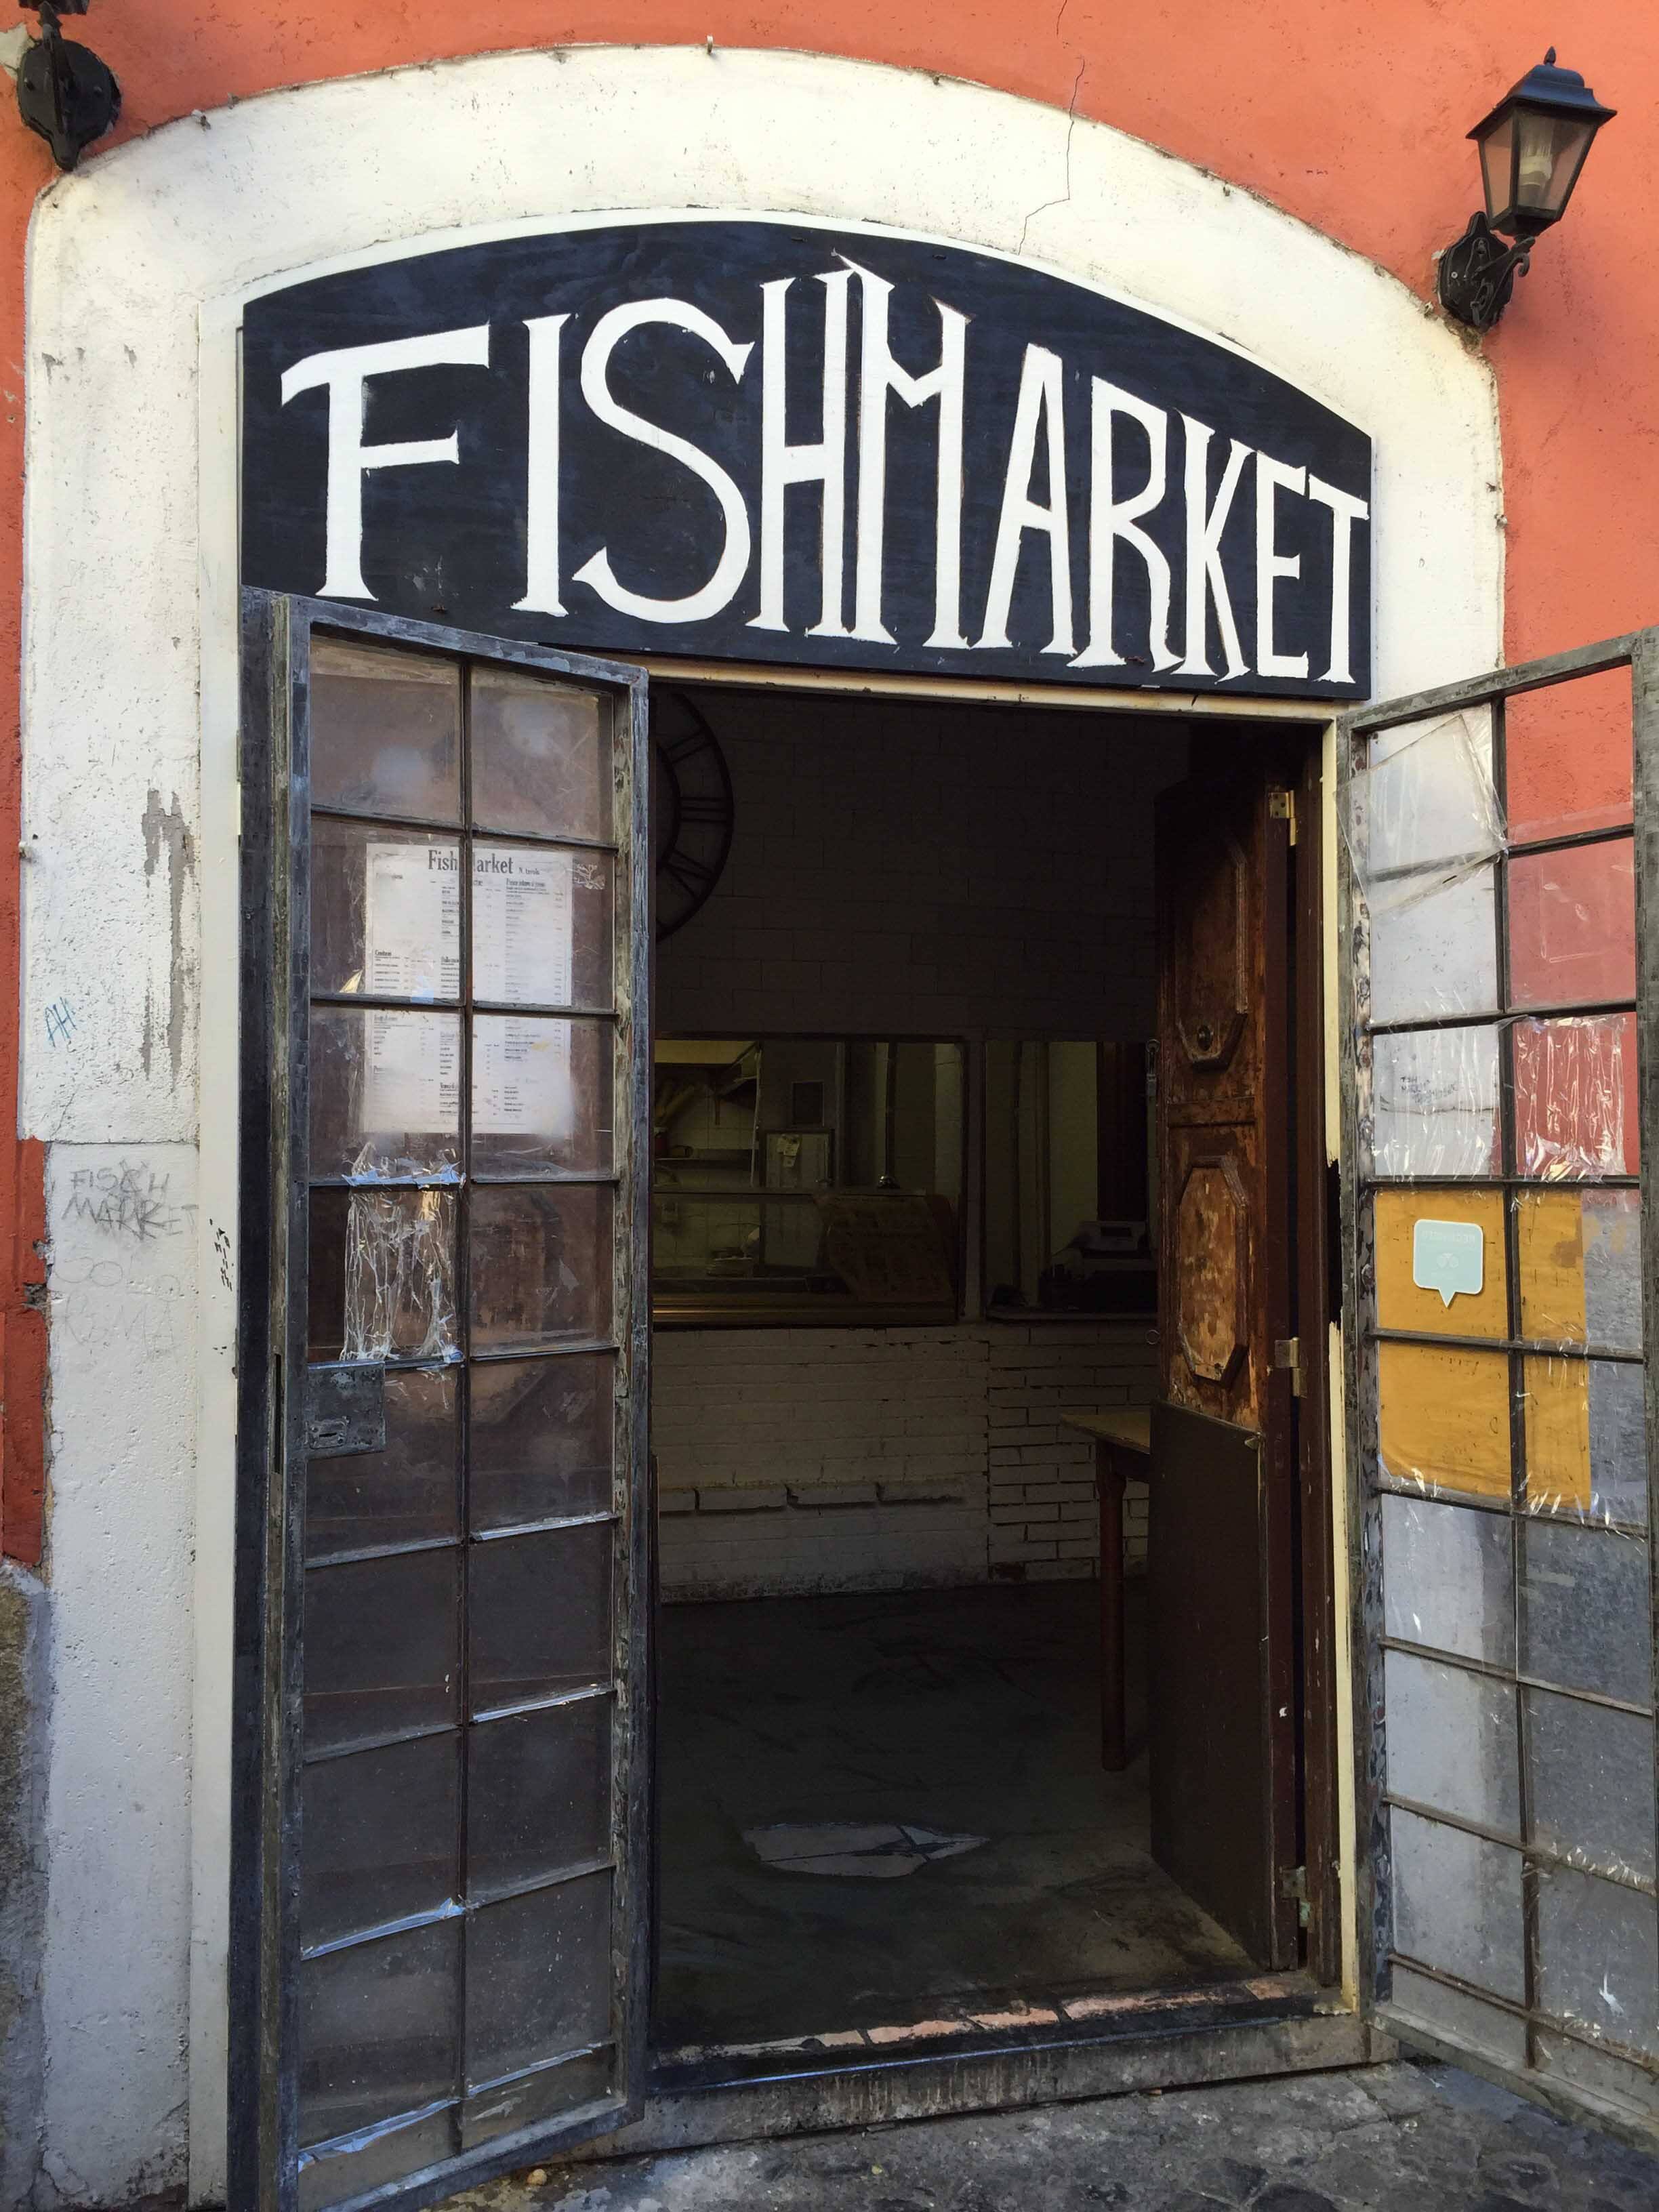 Fish Market Trastevere Menu Menu For Fish Market Trastevere Trastevere Roma